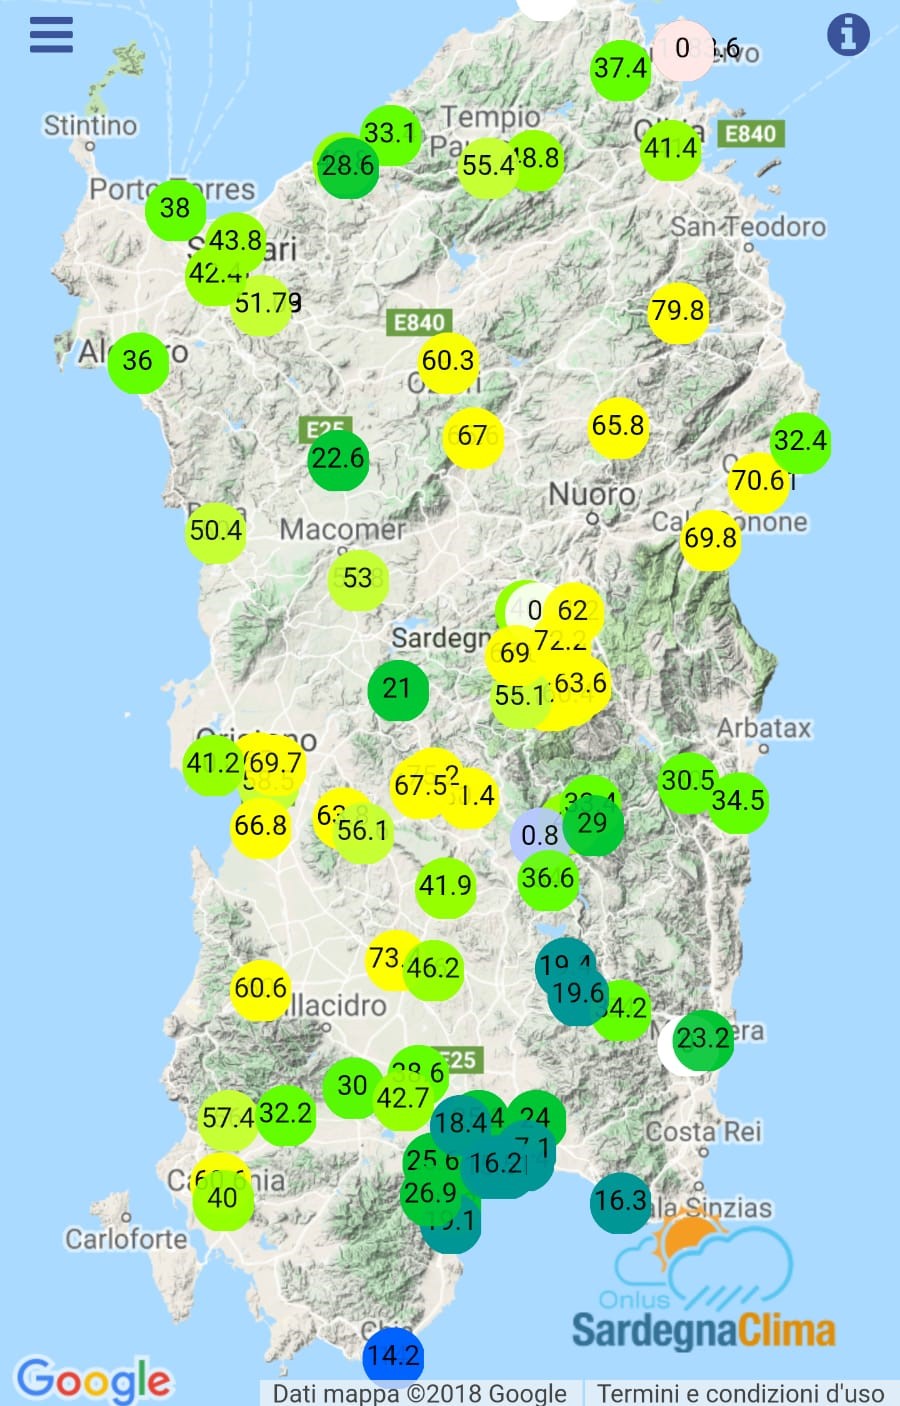 Cumulati giornalieri alle ore 23:59 del 1° maggio 2017 - Rete Sardegna Clima Onlus